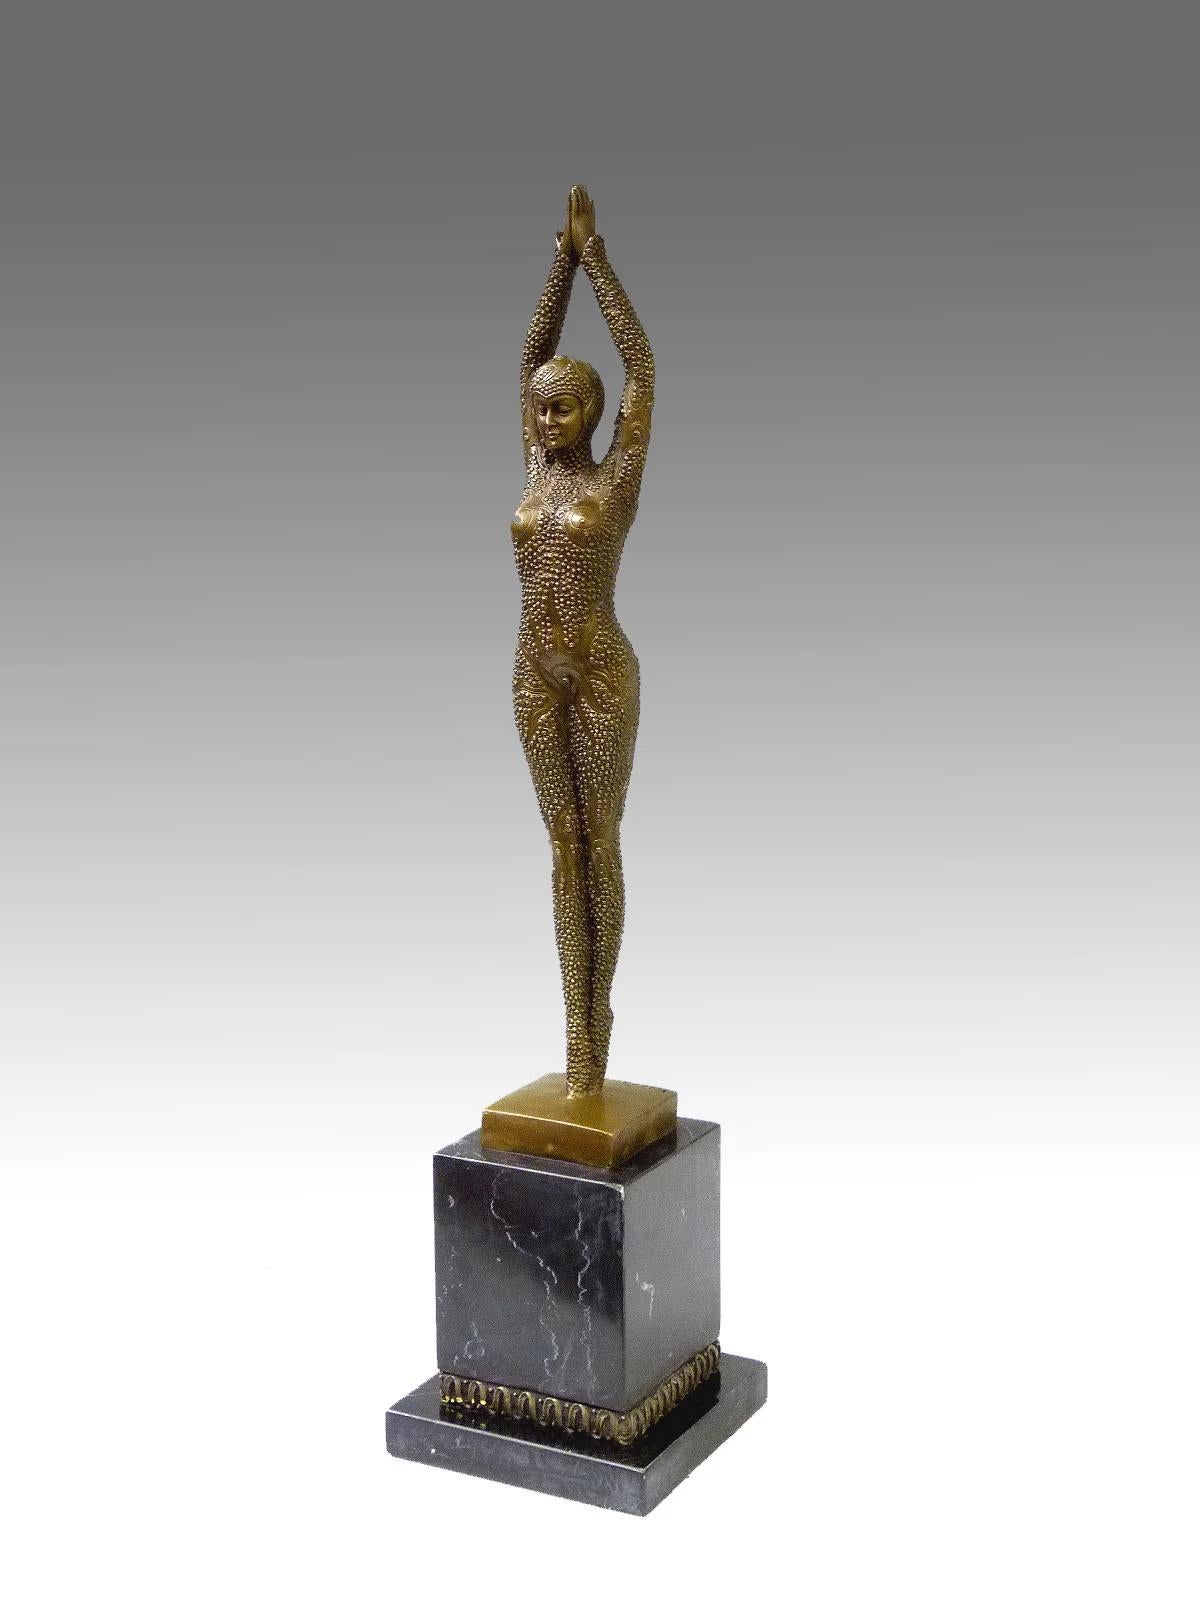 Skulptur aus patinierter Bronze, die eine Tänzerin im Art Déco-Stil darstellt, signiert D.H Chiparus, Modern Edition, XXI Jahrhundert.

H: 49cm, B: 11cm, T: 11cm